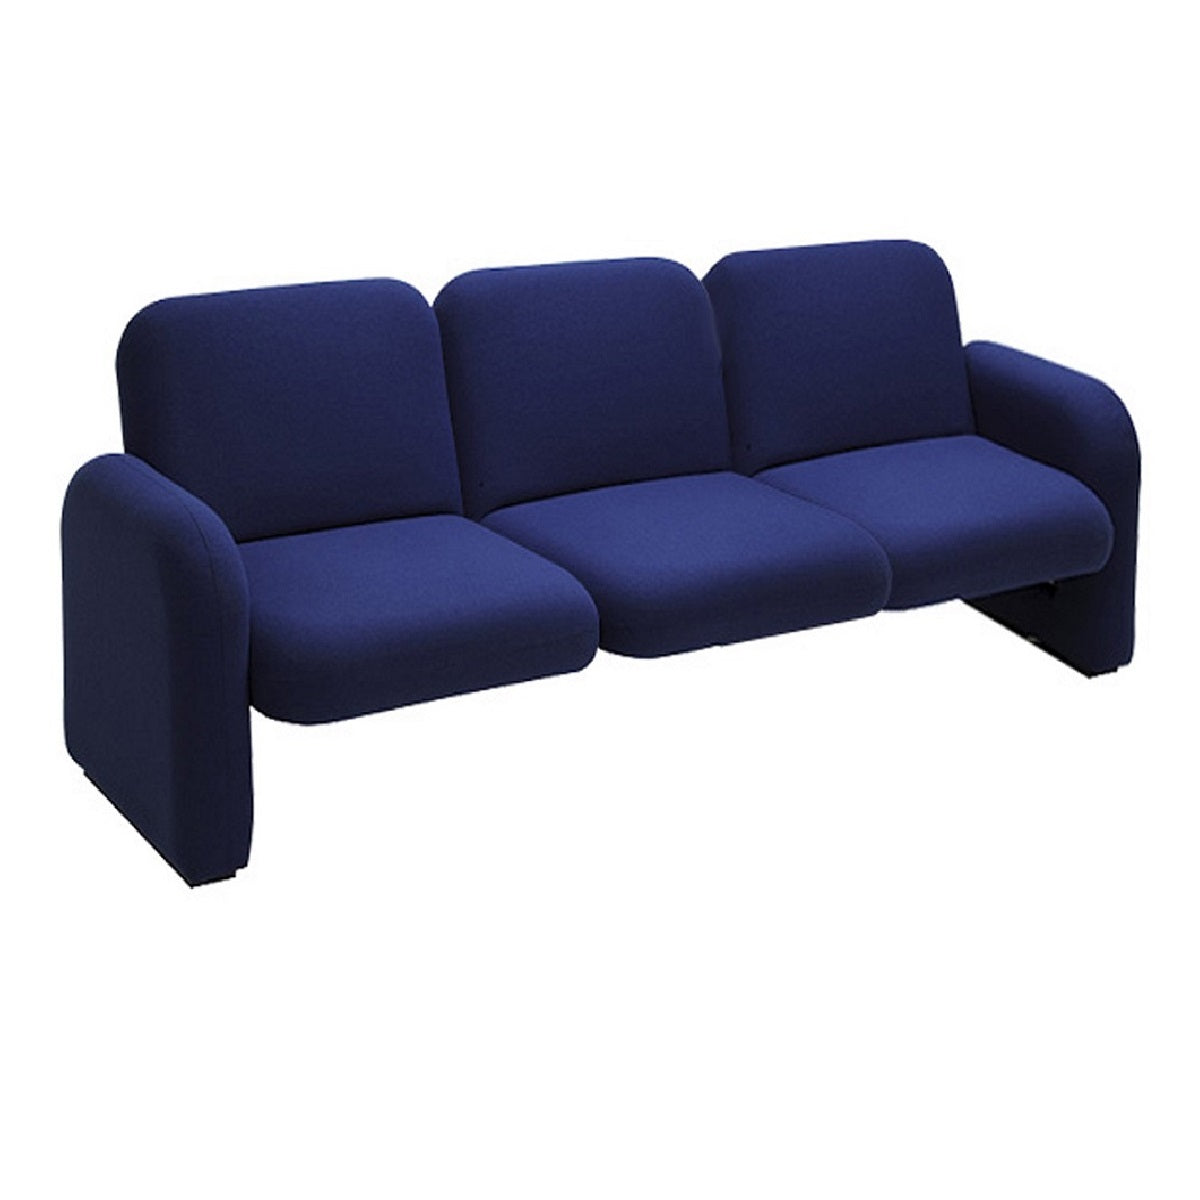 Sofá Vexon 3 plazas respaldo y asiento tapizado en tela